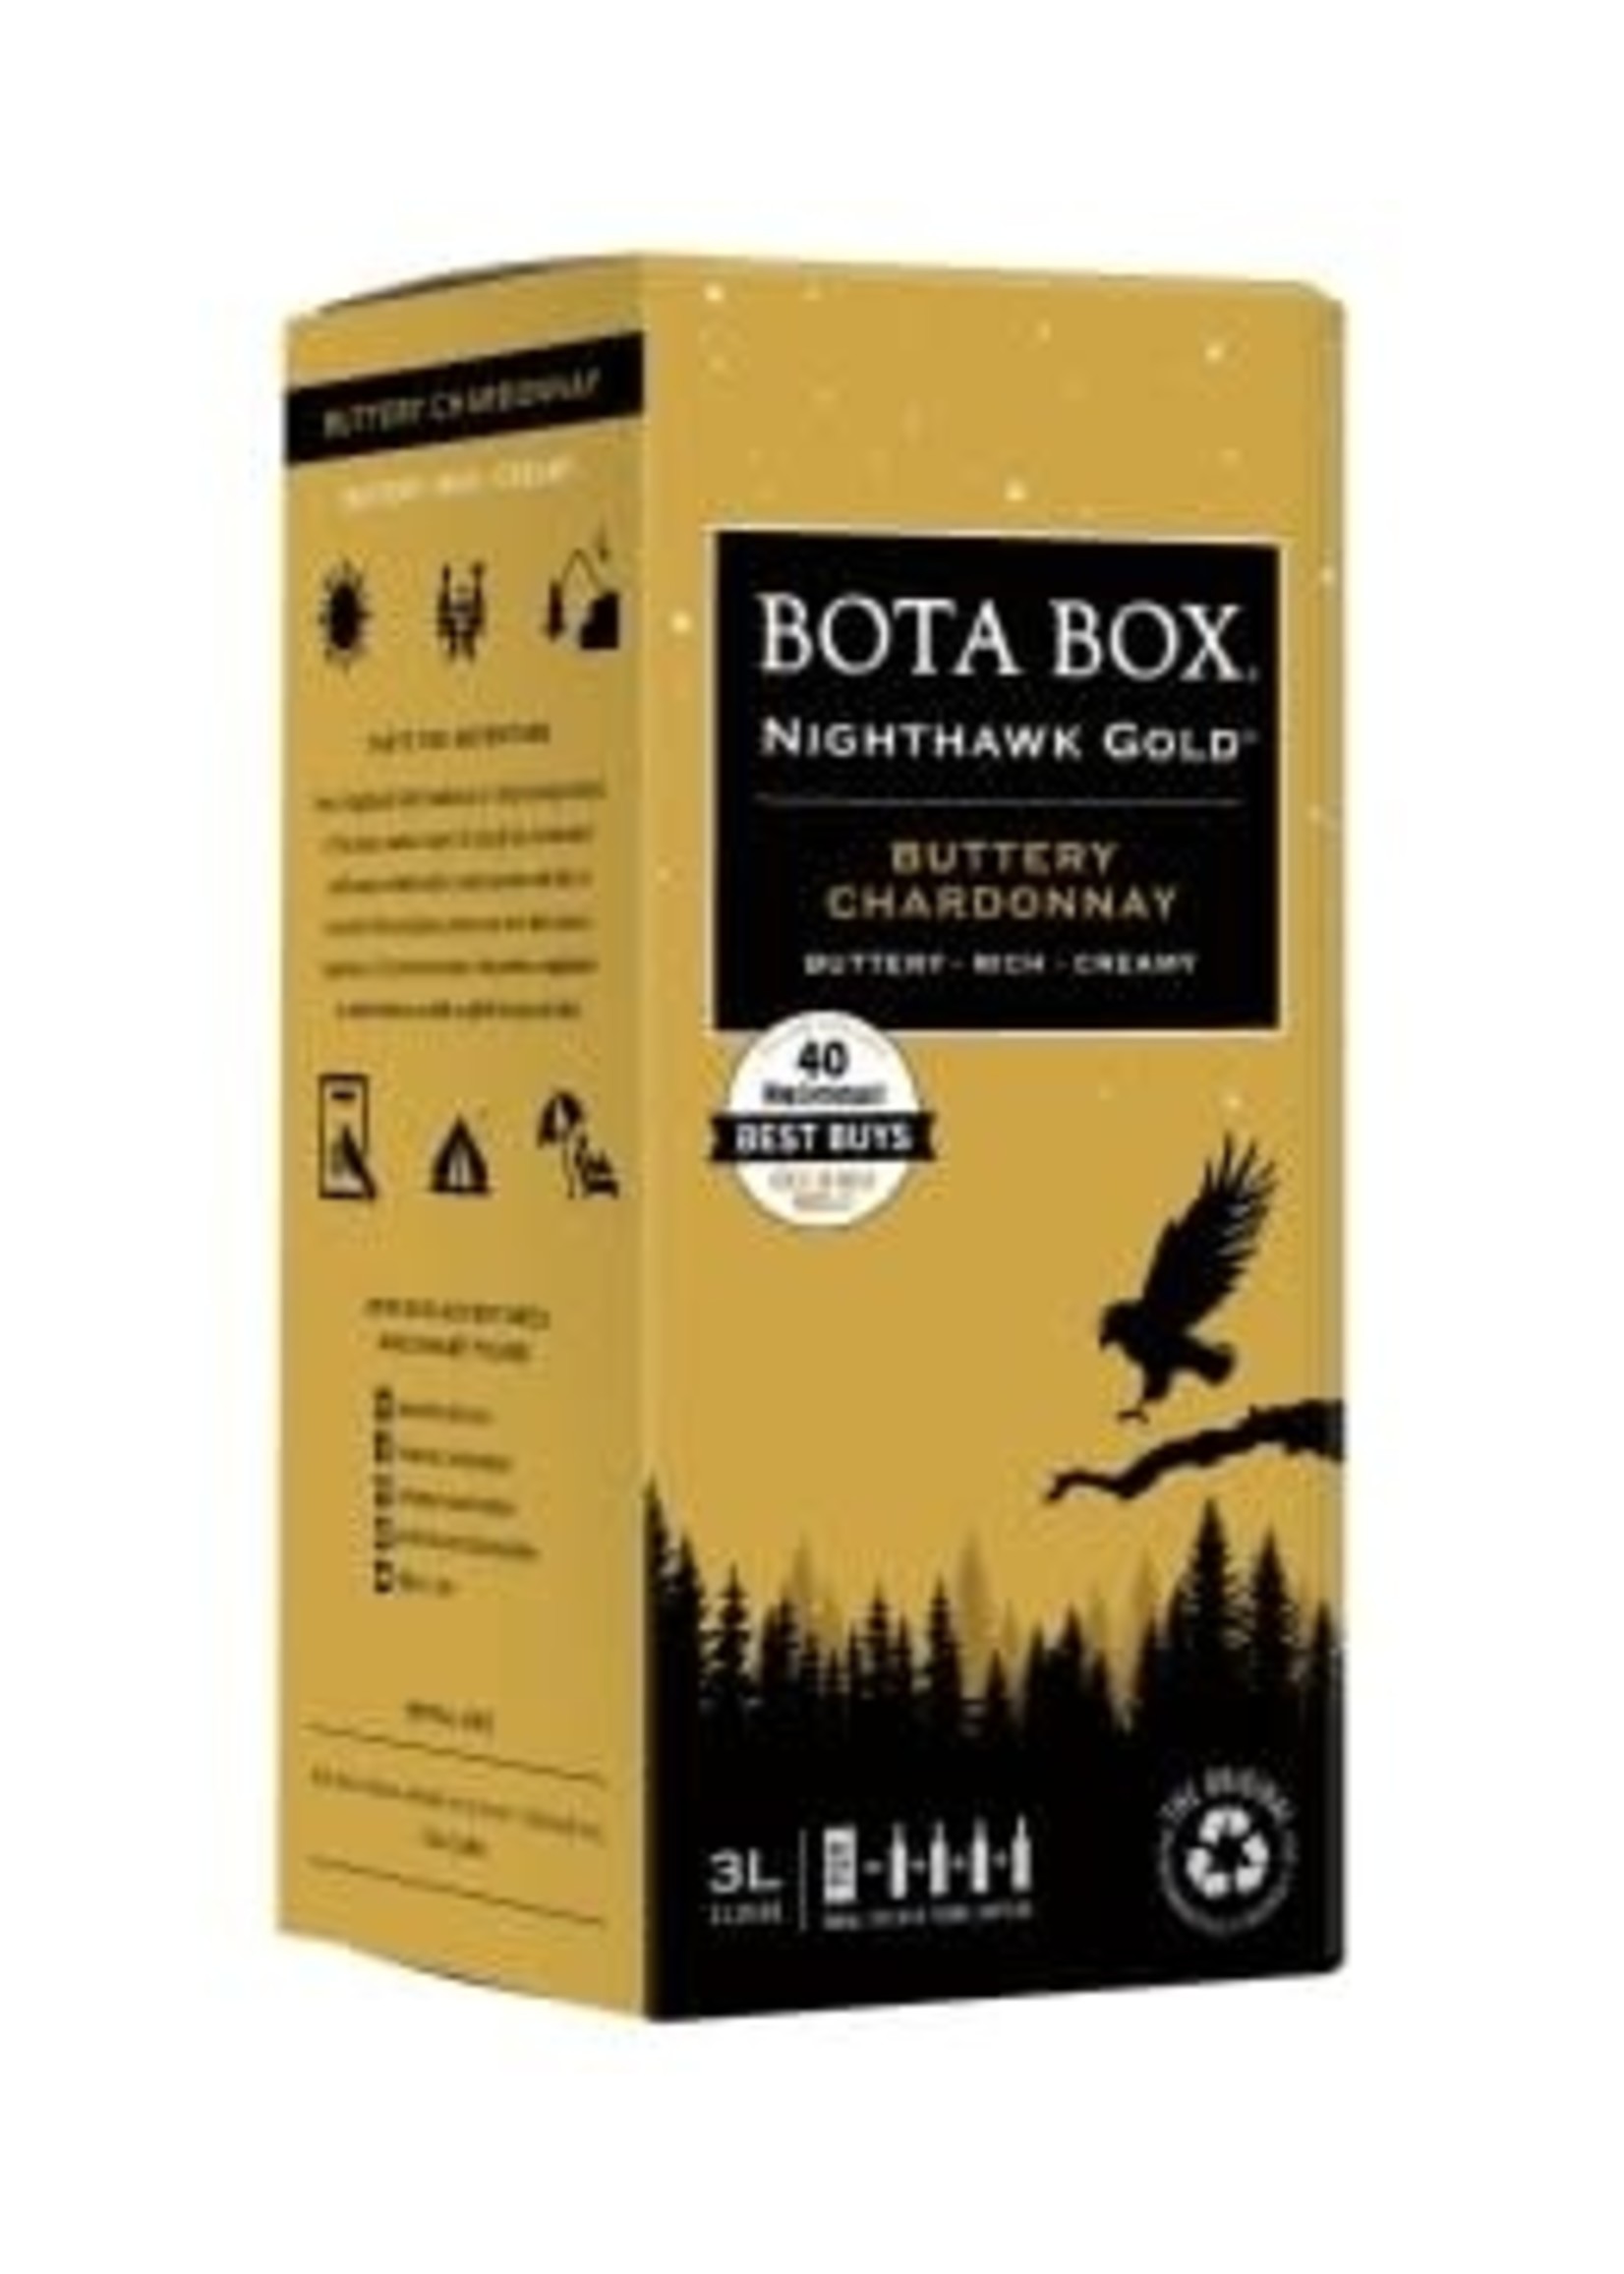 BOTA BOX BOTA BOX	NIGHTHAWK GOLD CHARDONNAY 	3.0L